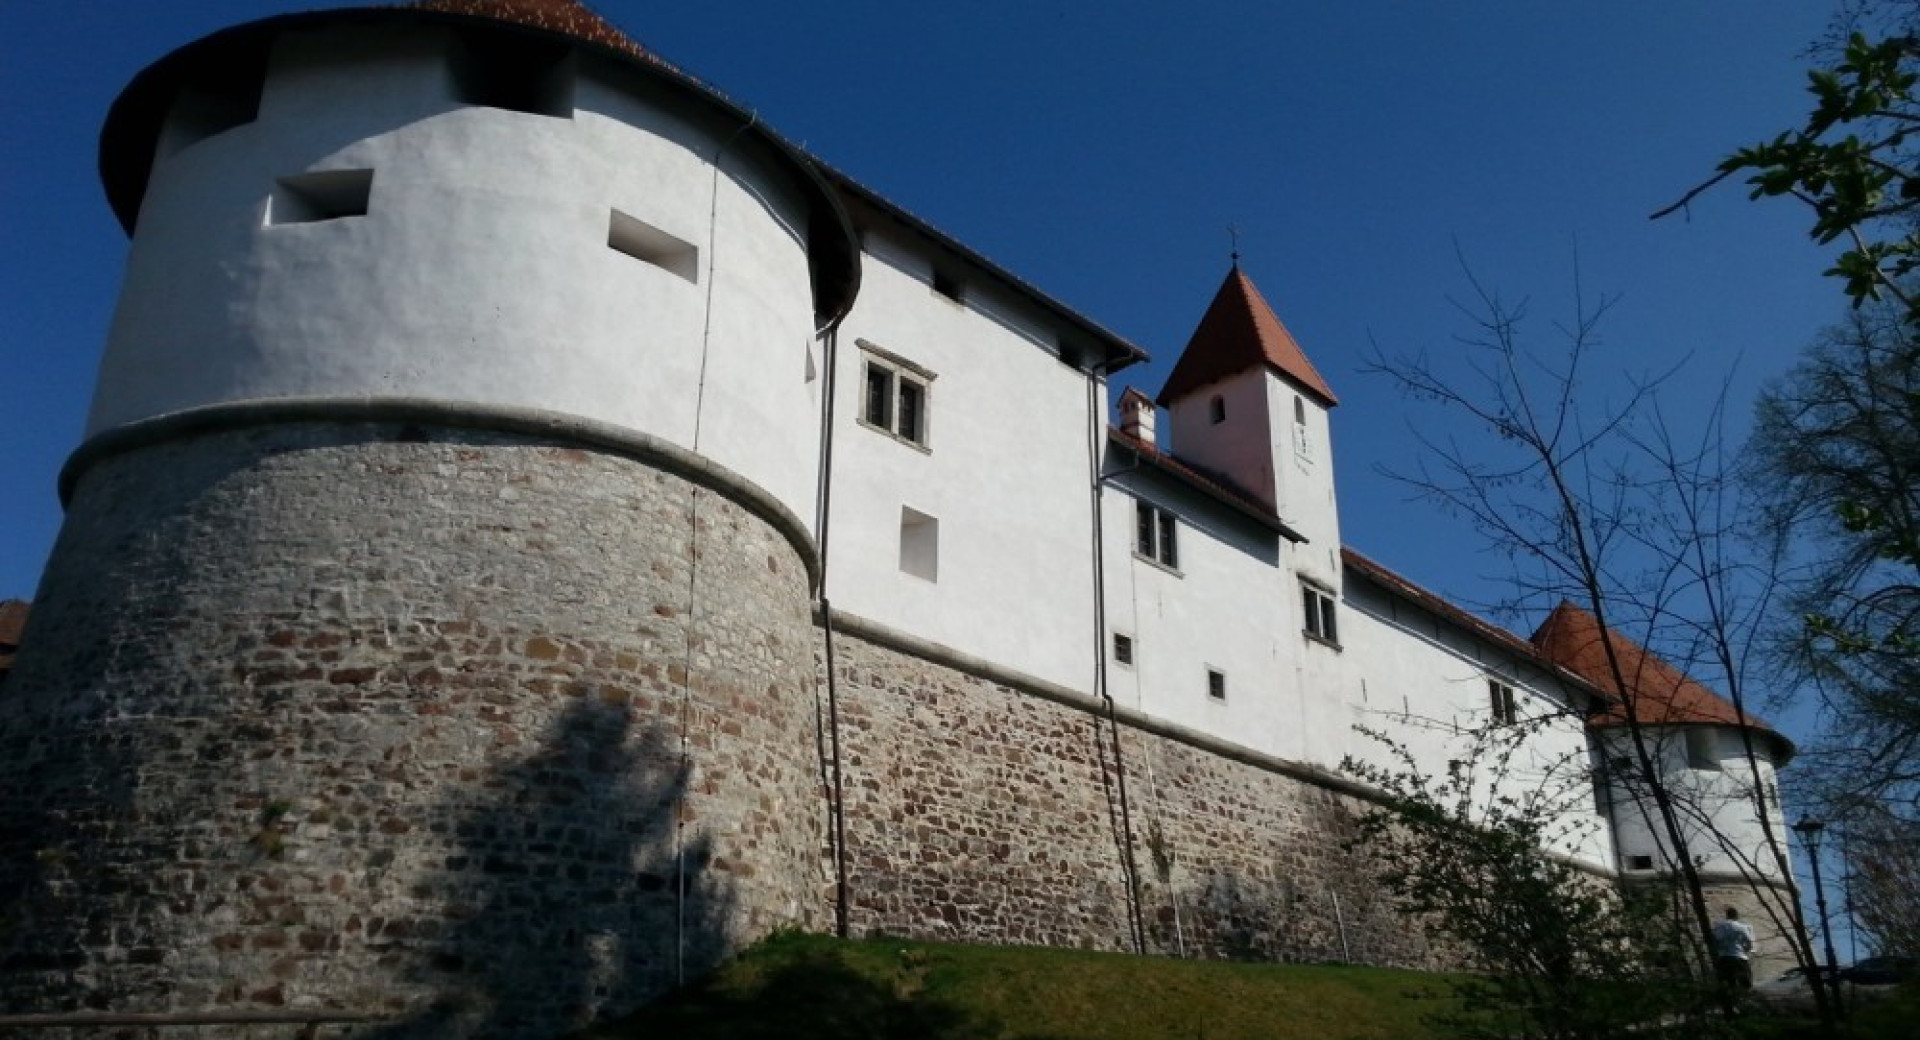 Zunanje obzidje gradu.